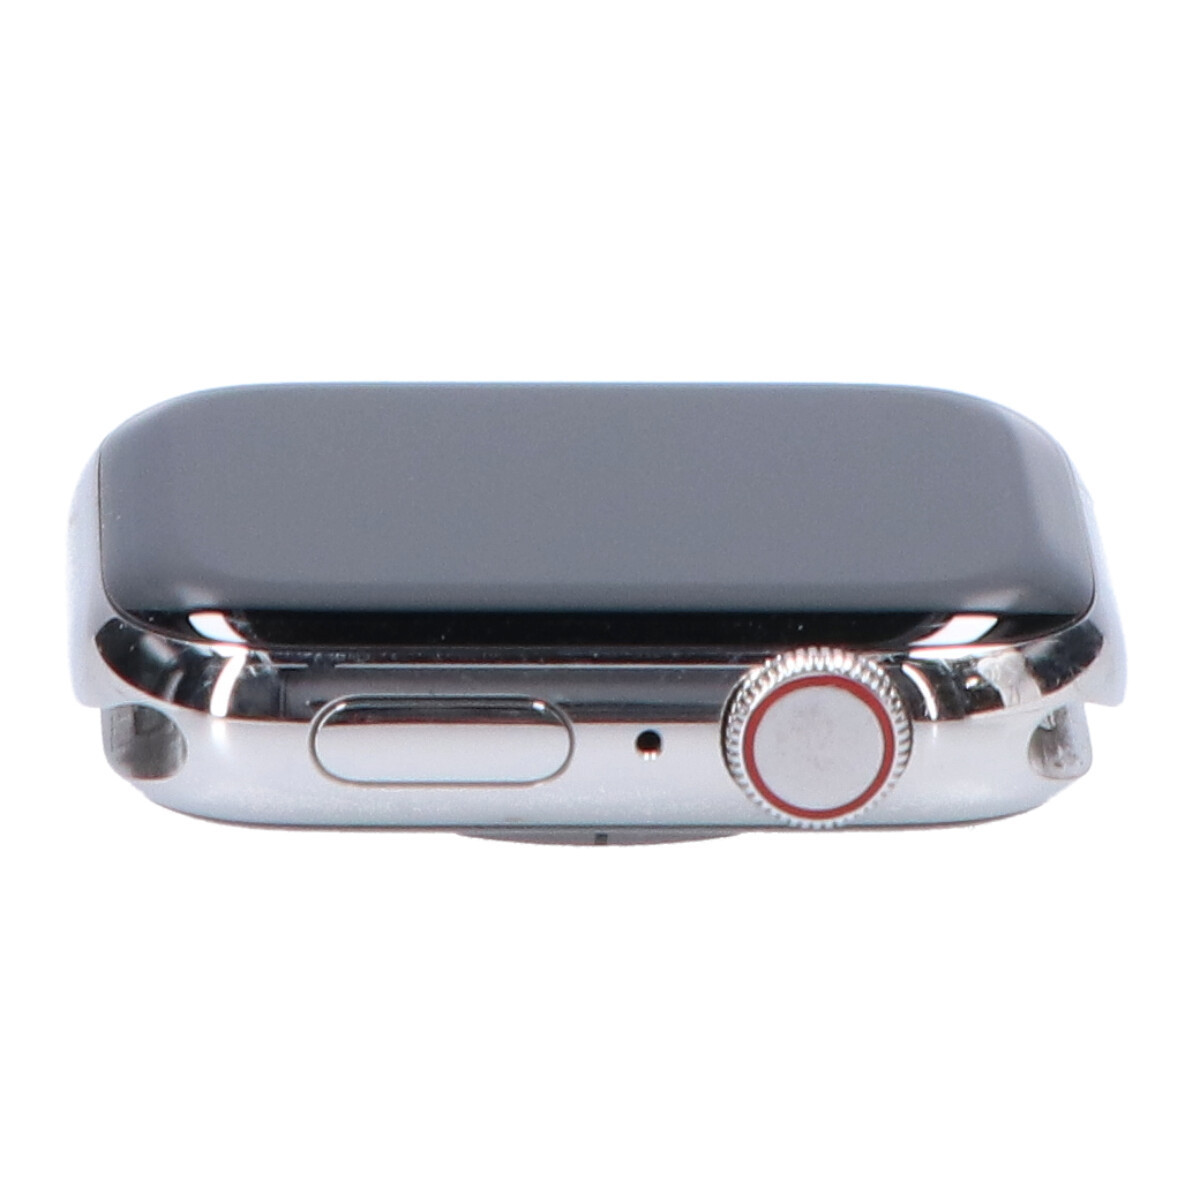 [1 jpy ]HERMES Apple Watch MJ493J/A Series6 44mm GPS+Cellular model simple toe ru leather strap smart watch 